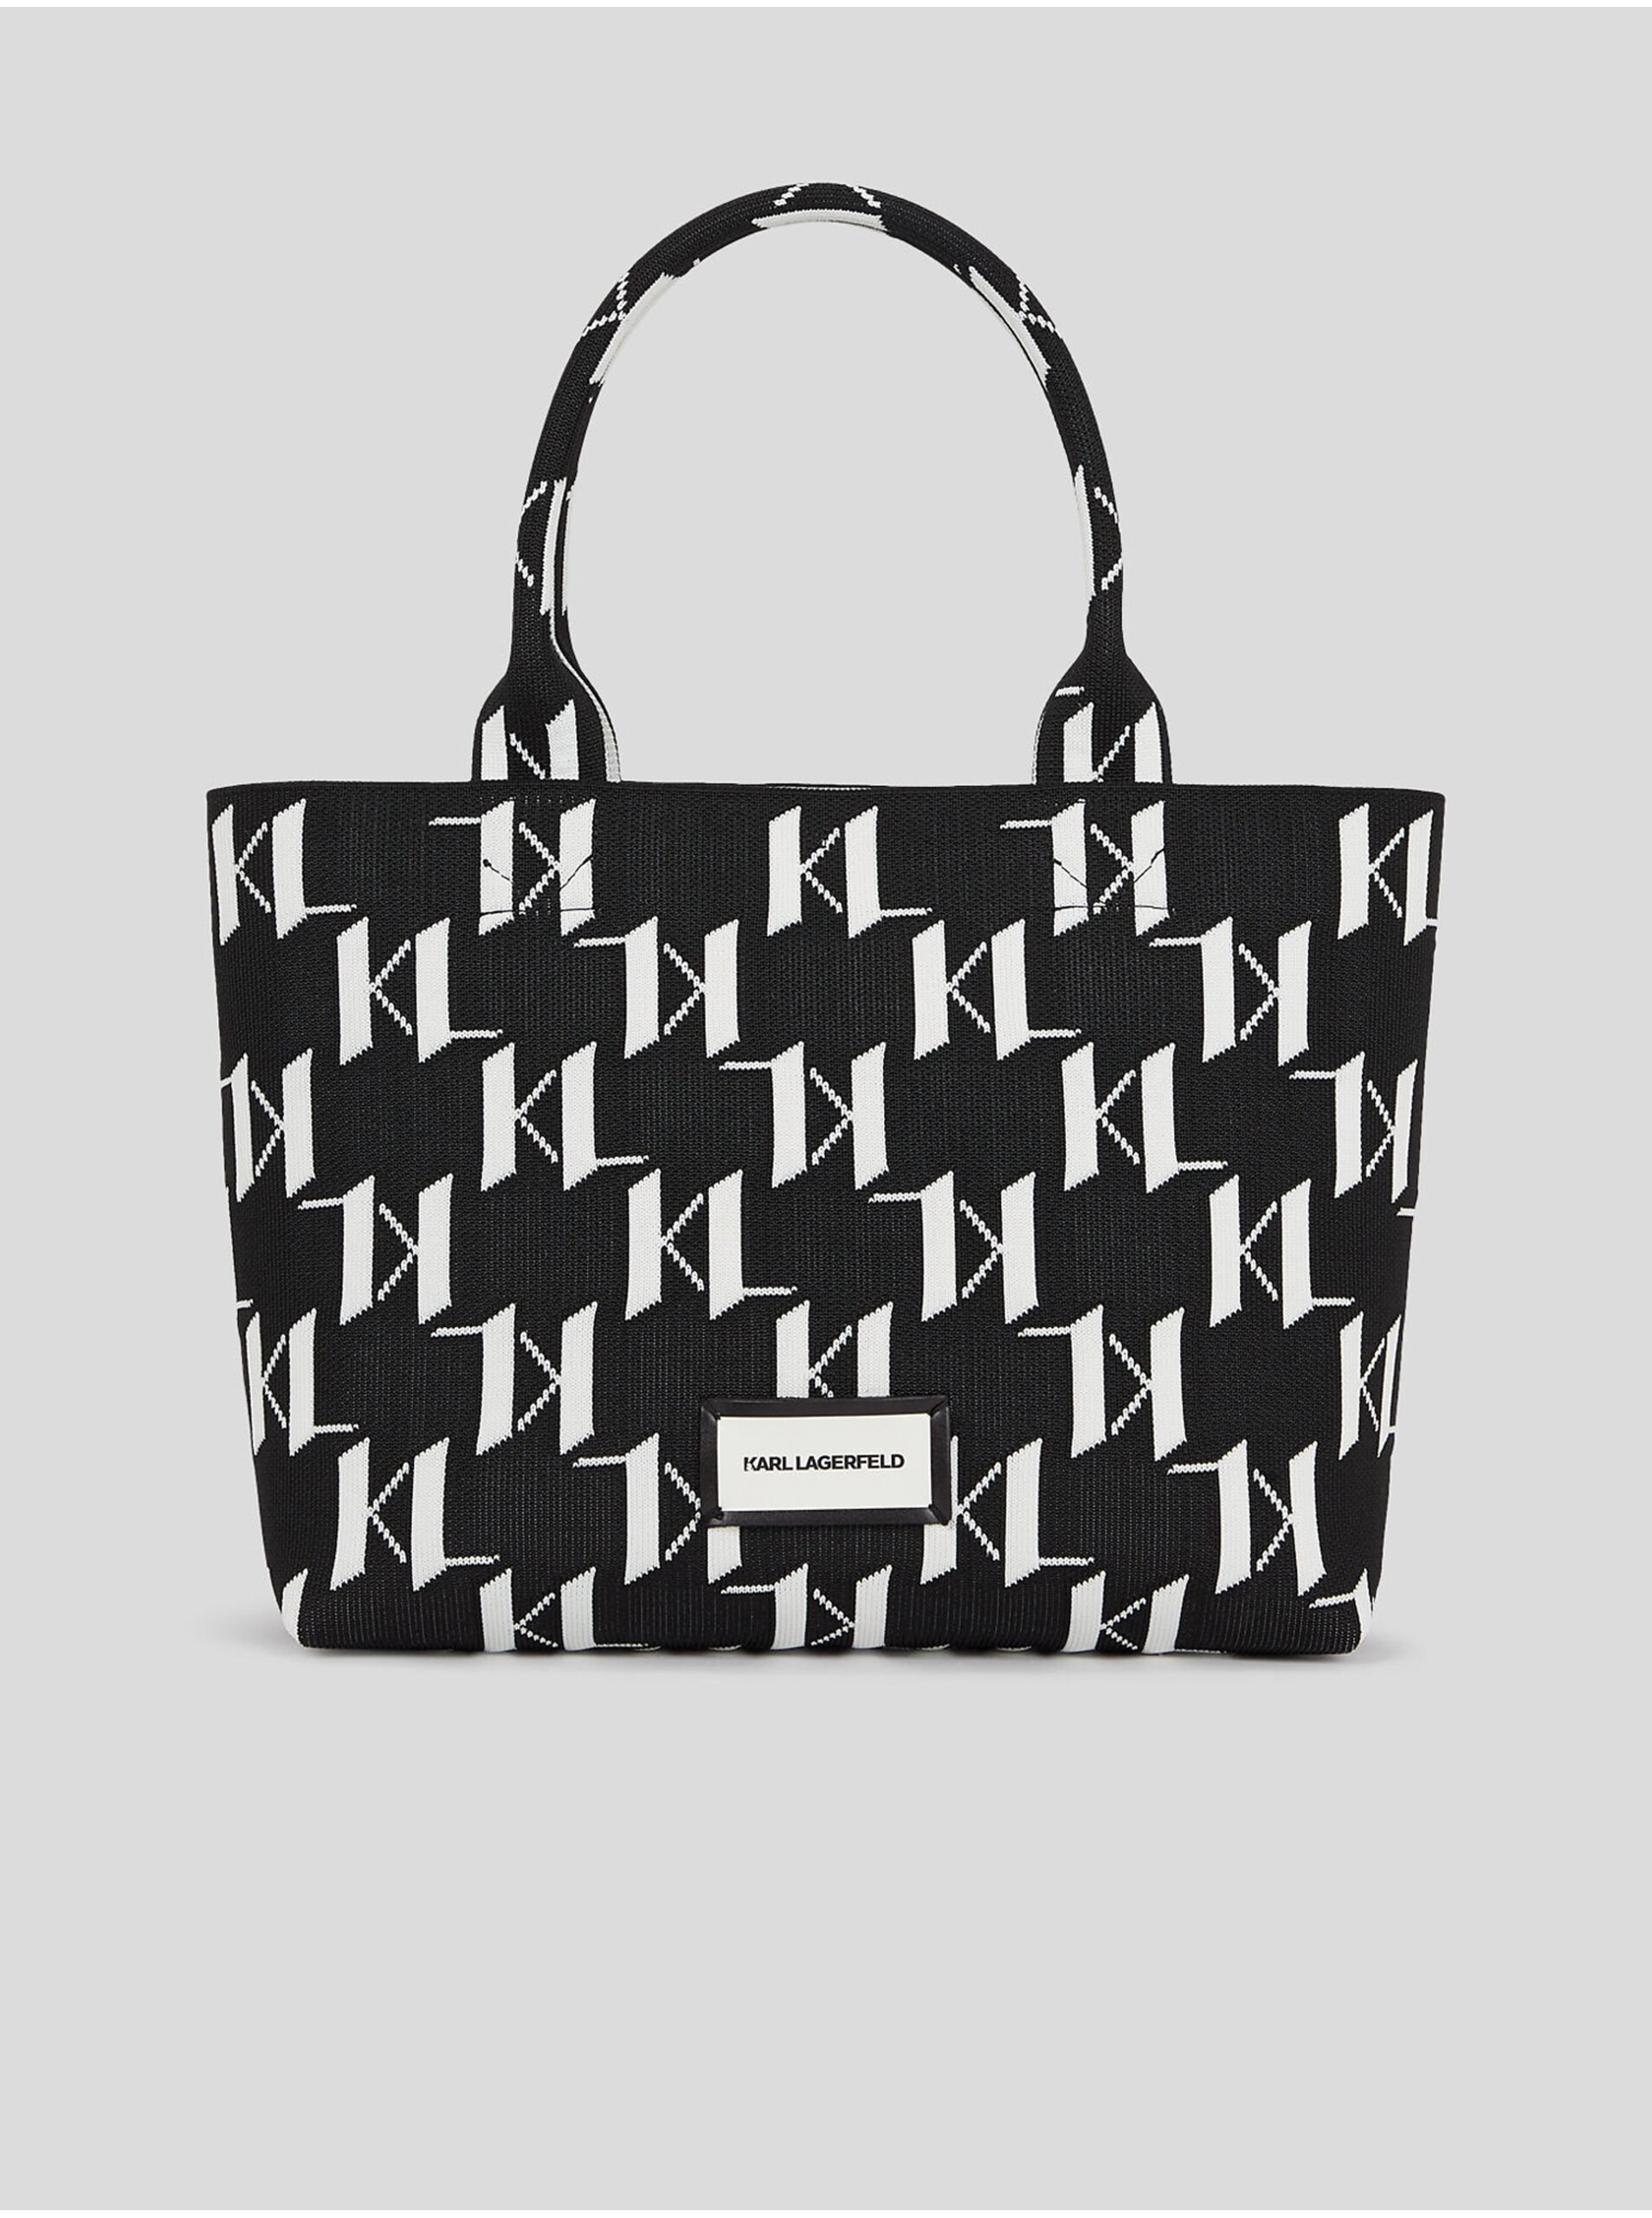 Women's white and black patterned handbag KARL LAGERFELD Monogram Knit - Women